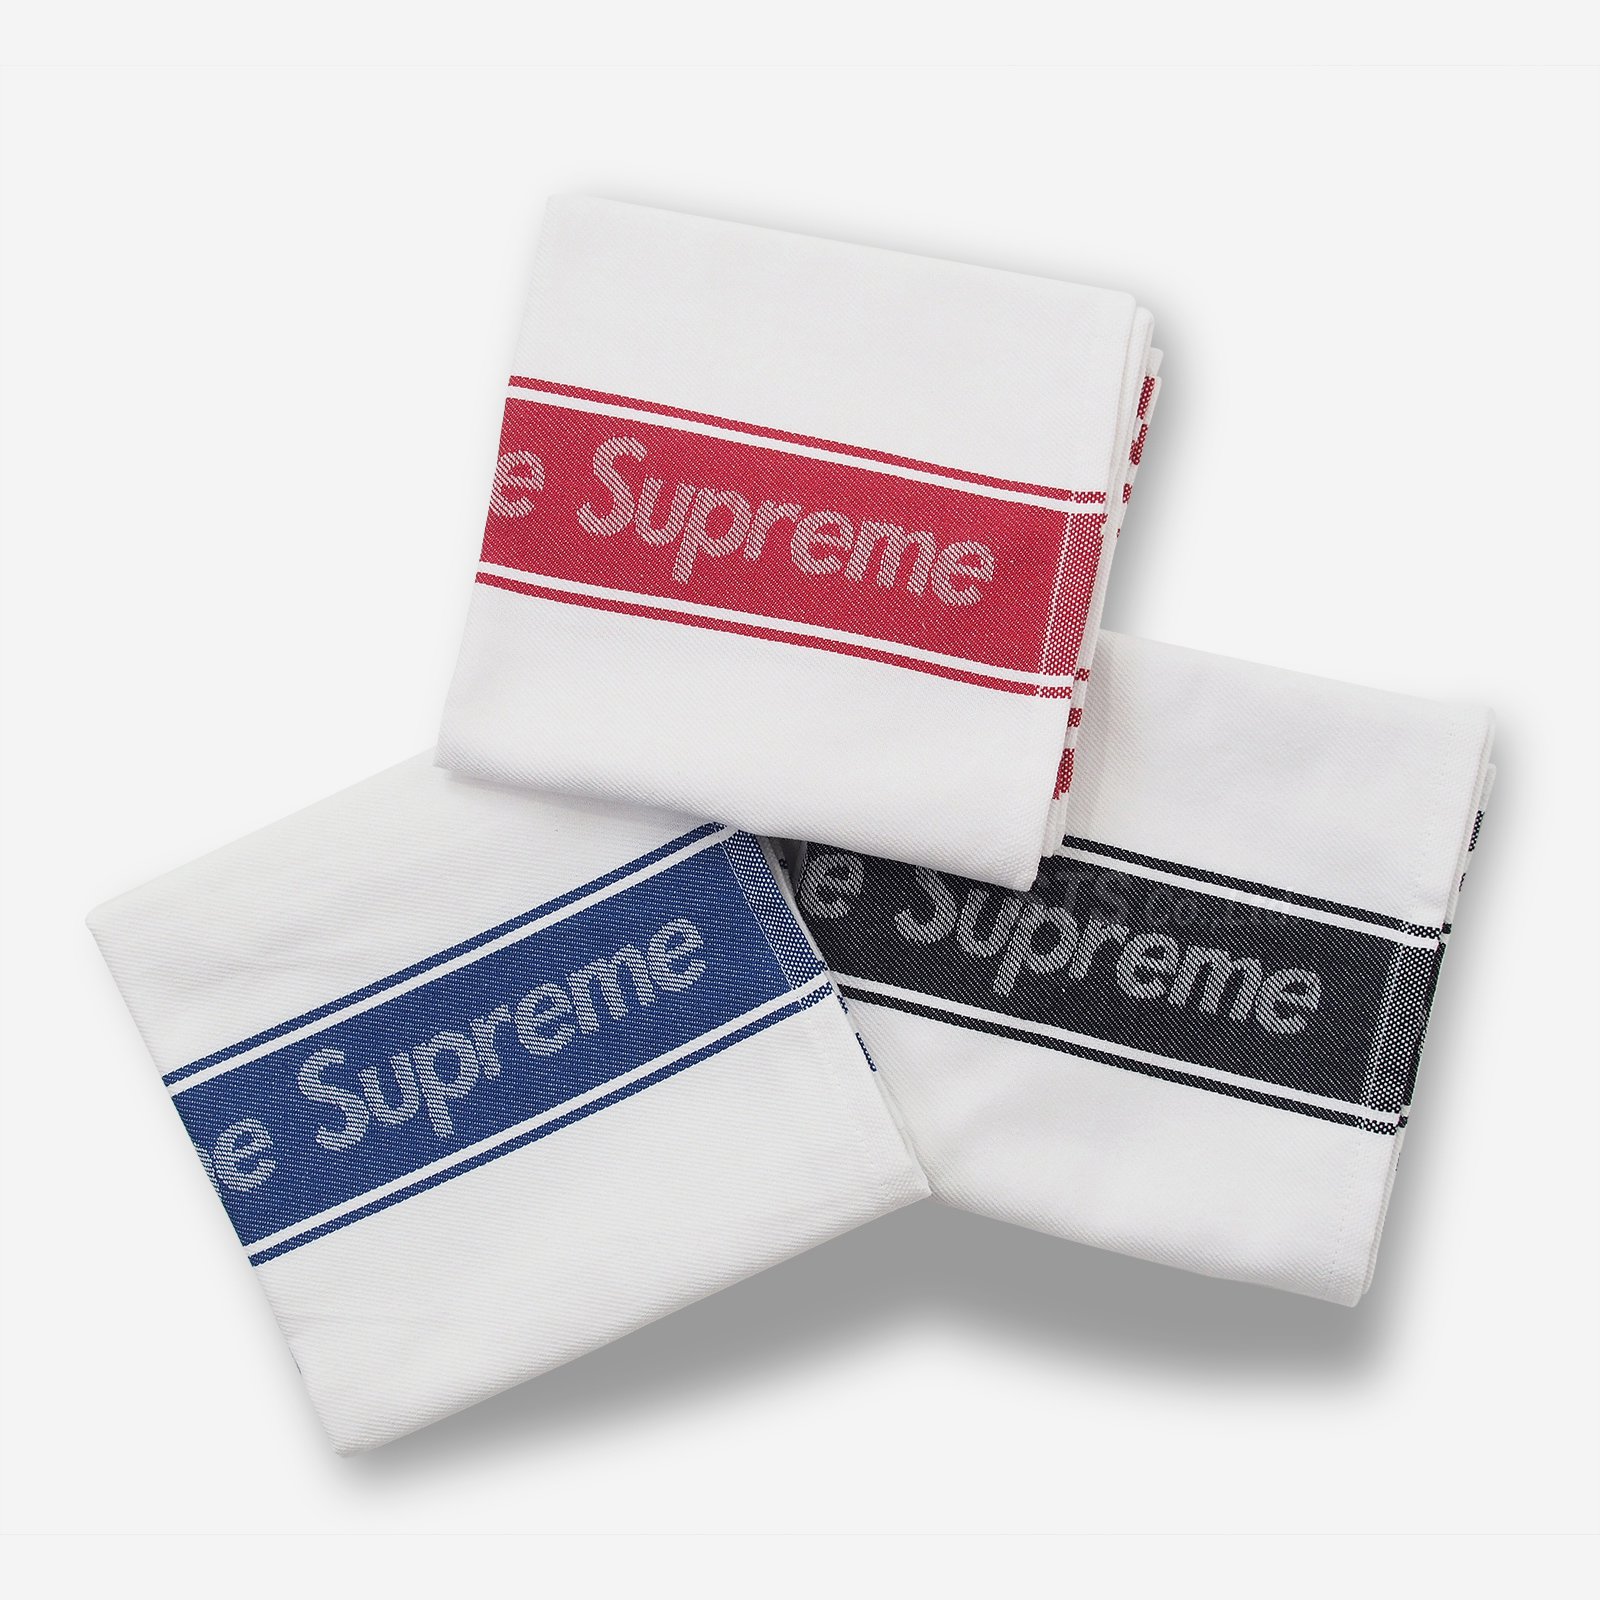 2019SS Supreme Dish Towels(Set of 3)新品